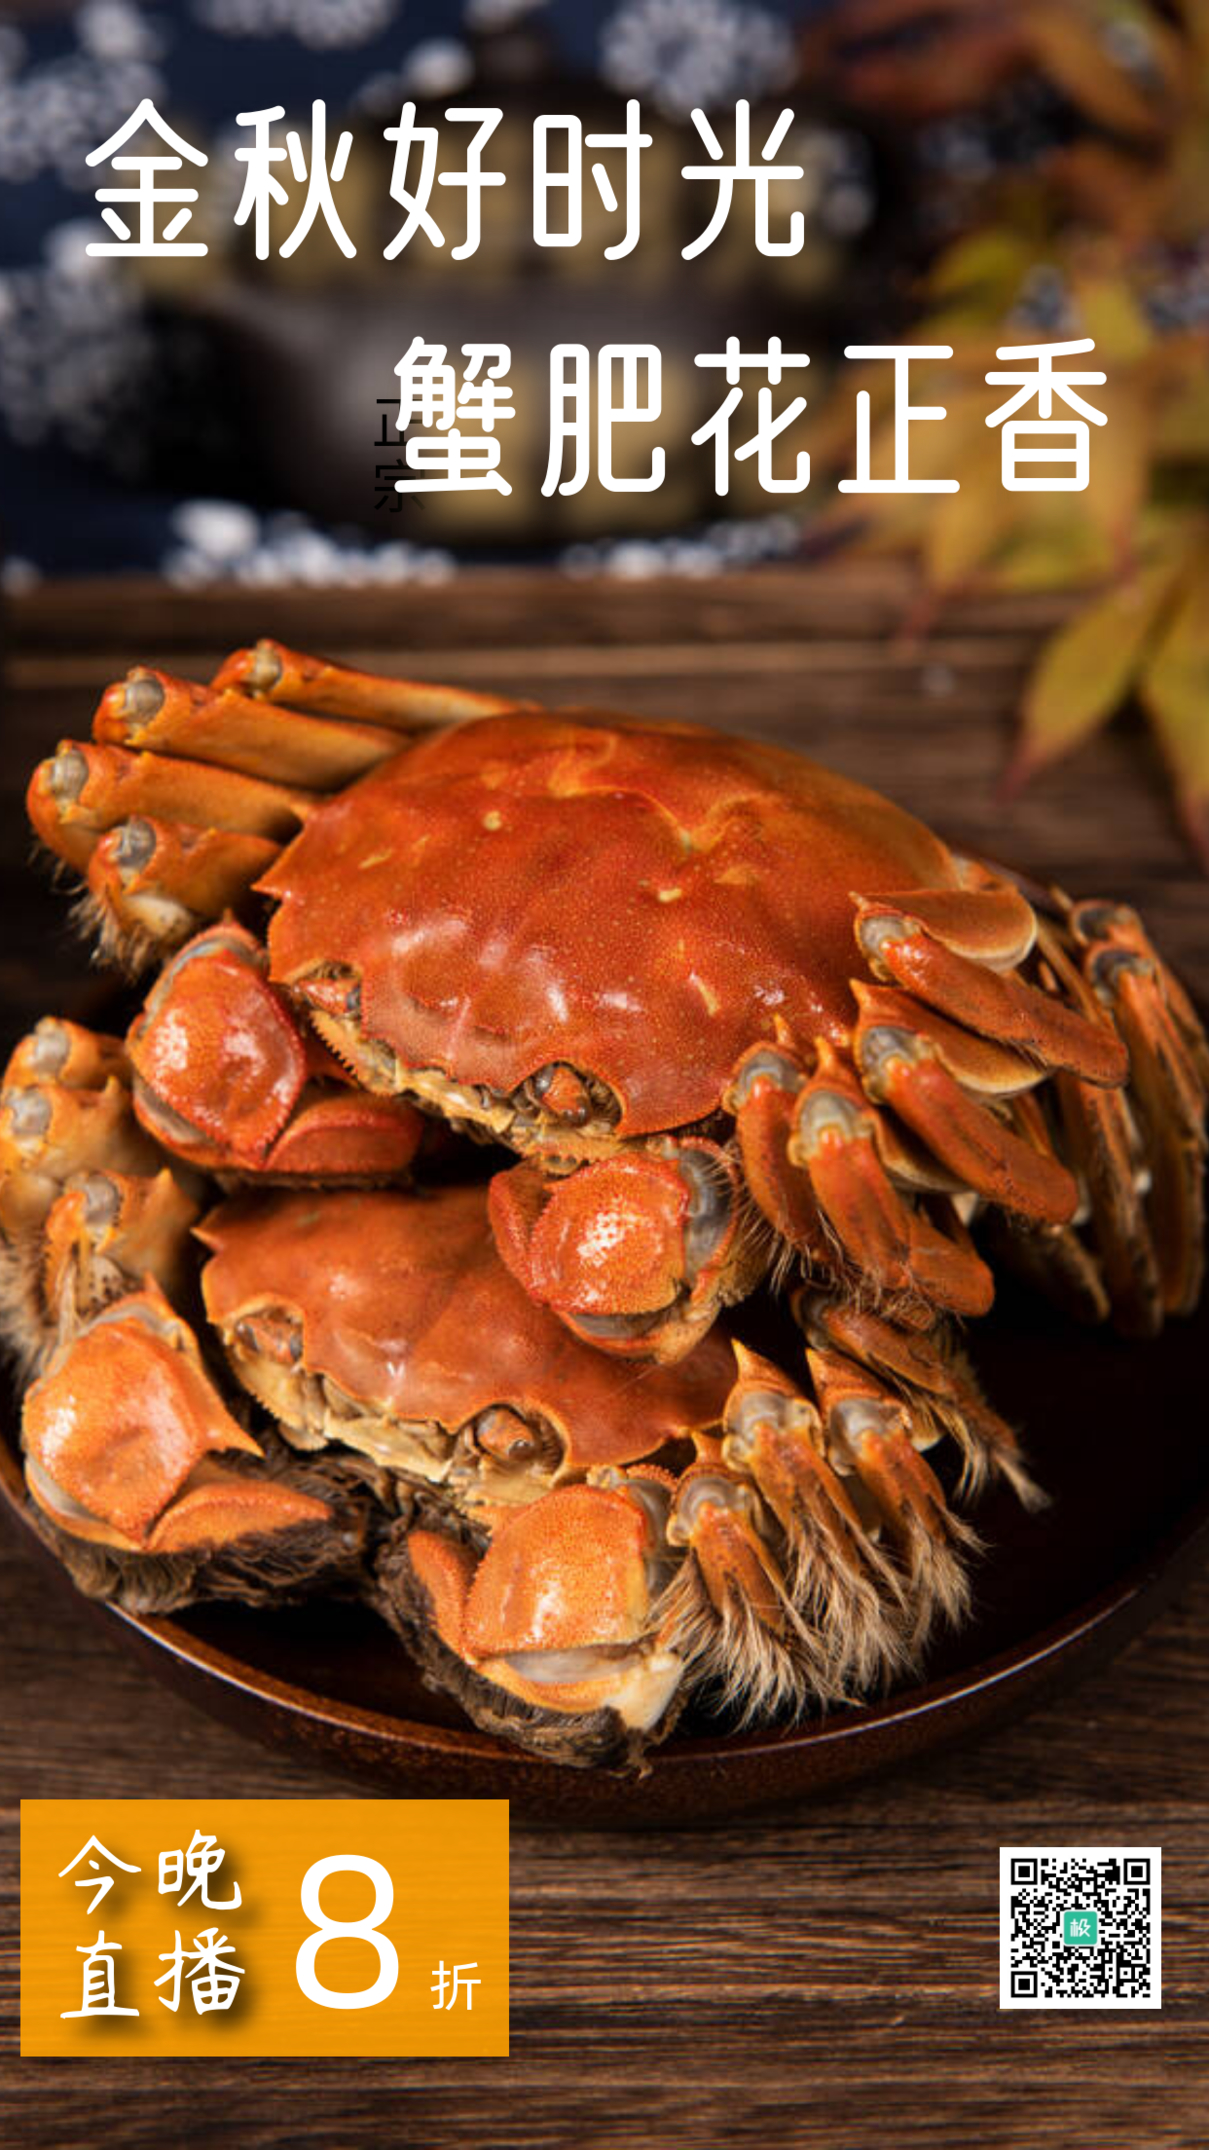 摄影特写大闸蟹螃蟹美食促销电商直播海报